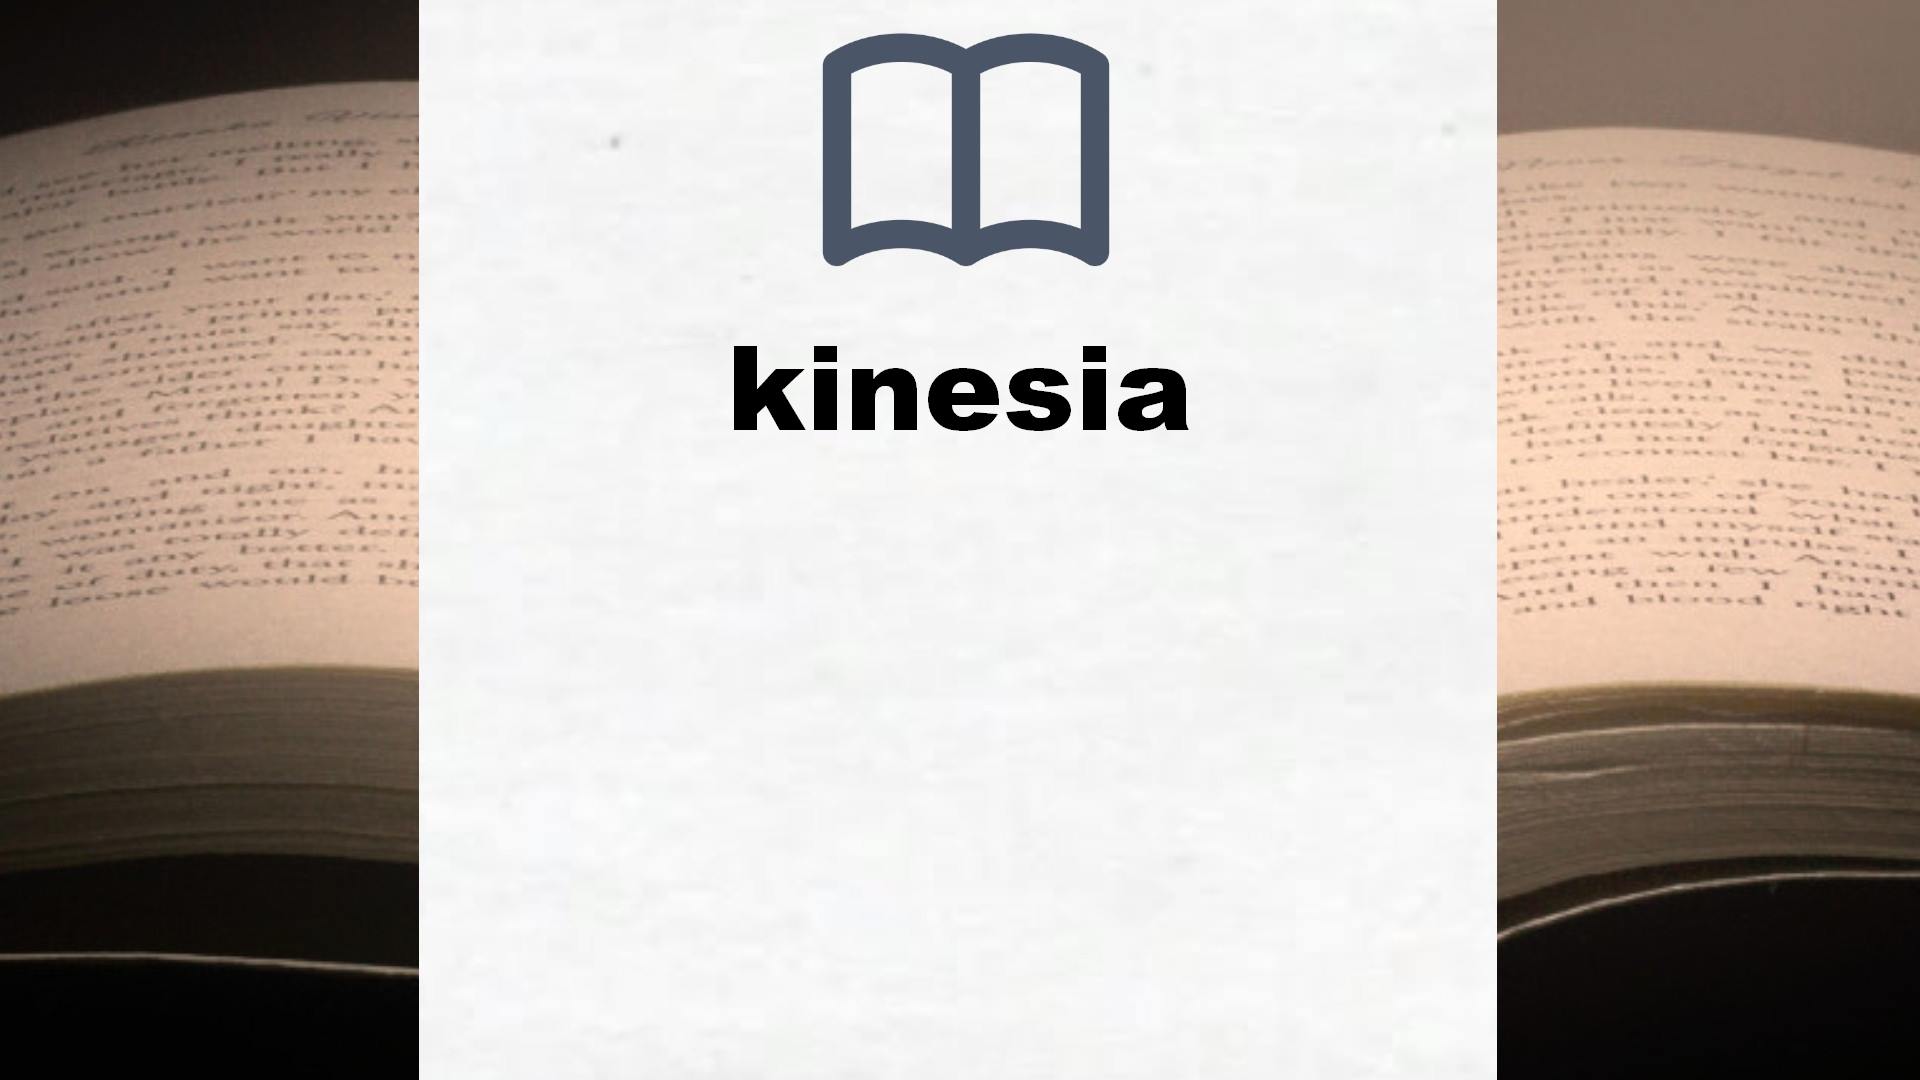 Libros sobre kinesia